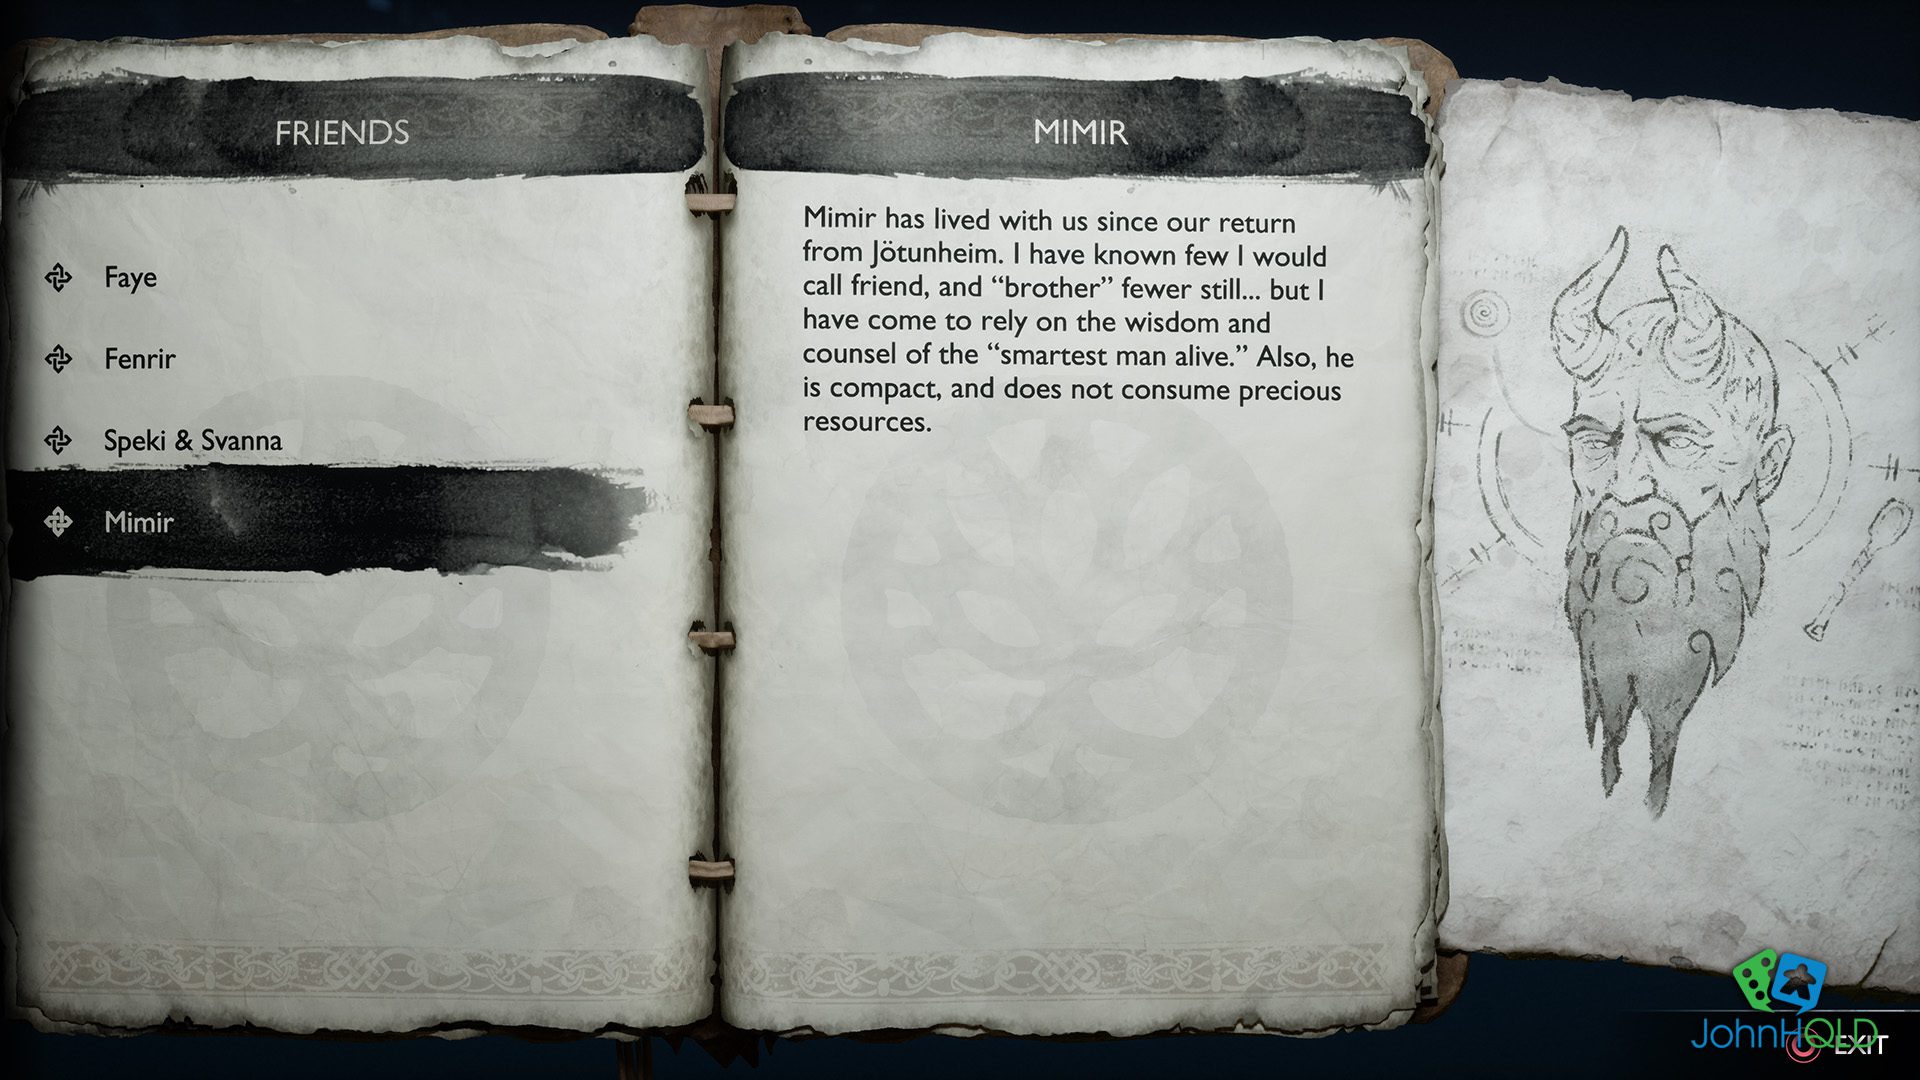 20221219 - God of War Ragnarok - Reading the journal of Kratos is illuminating